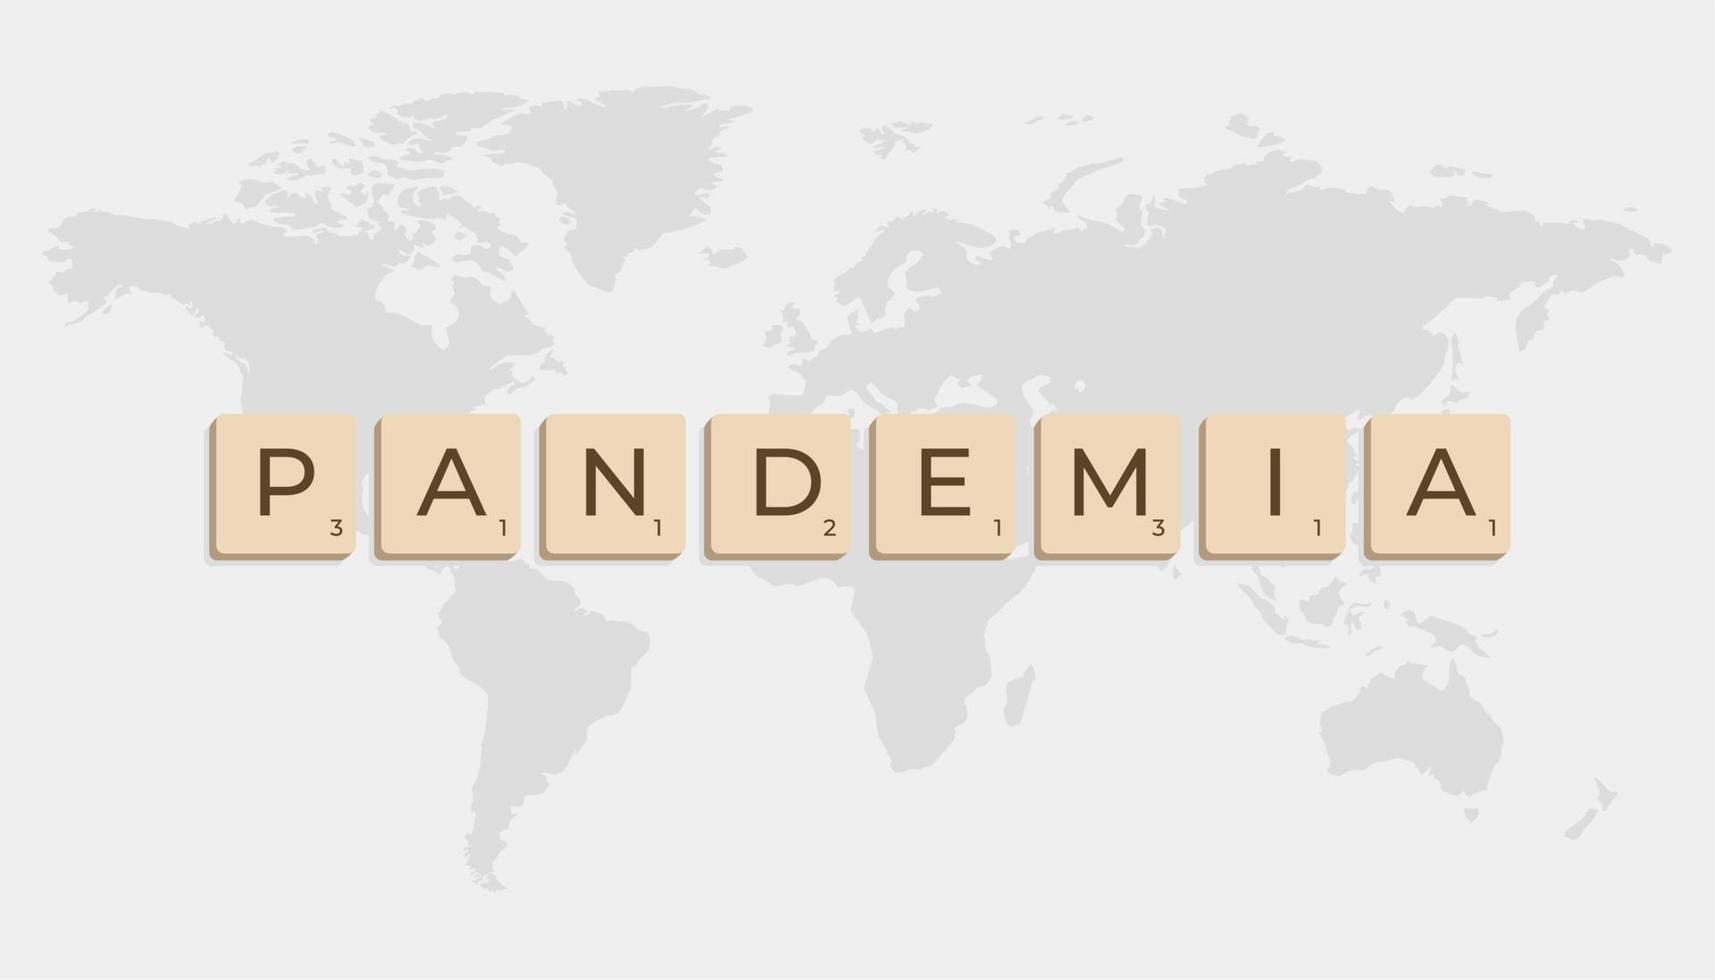 Pandemie geschrieben im Spanisch im Briefe mit Welt Karte im grau Hintergrund vektor